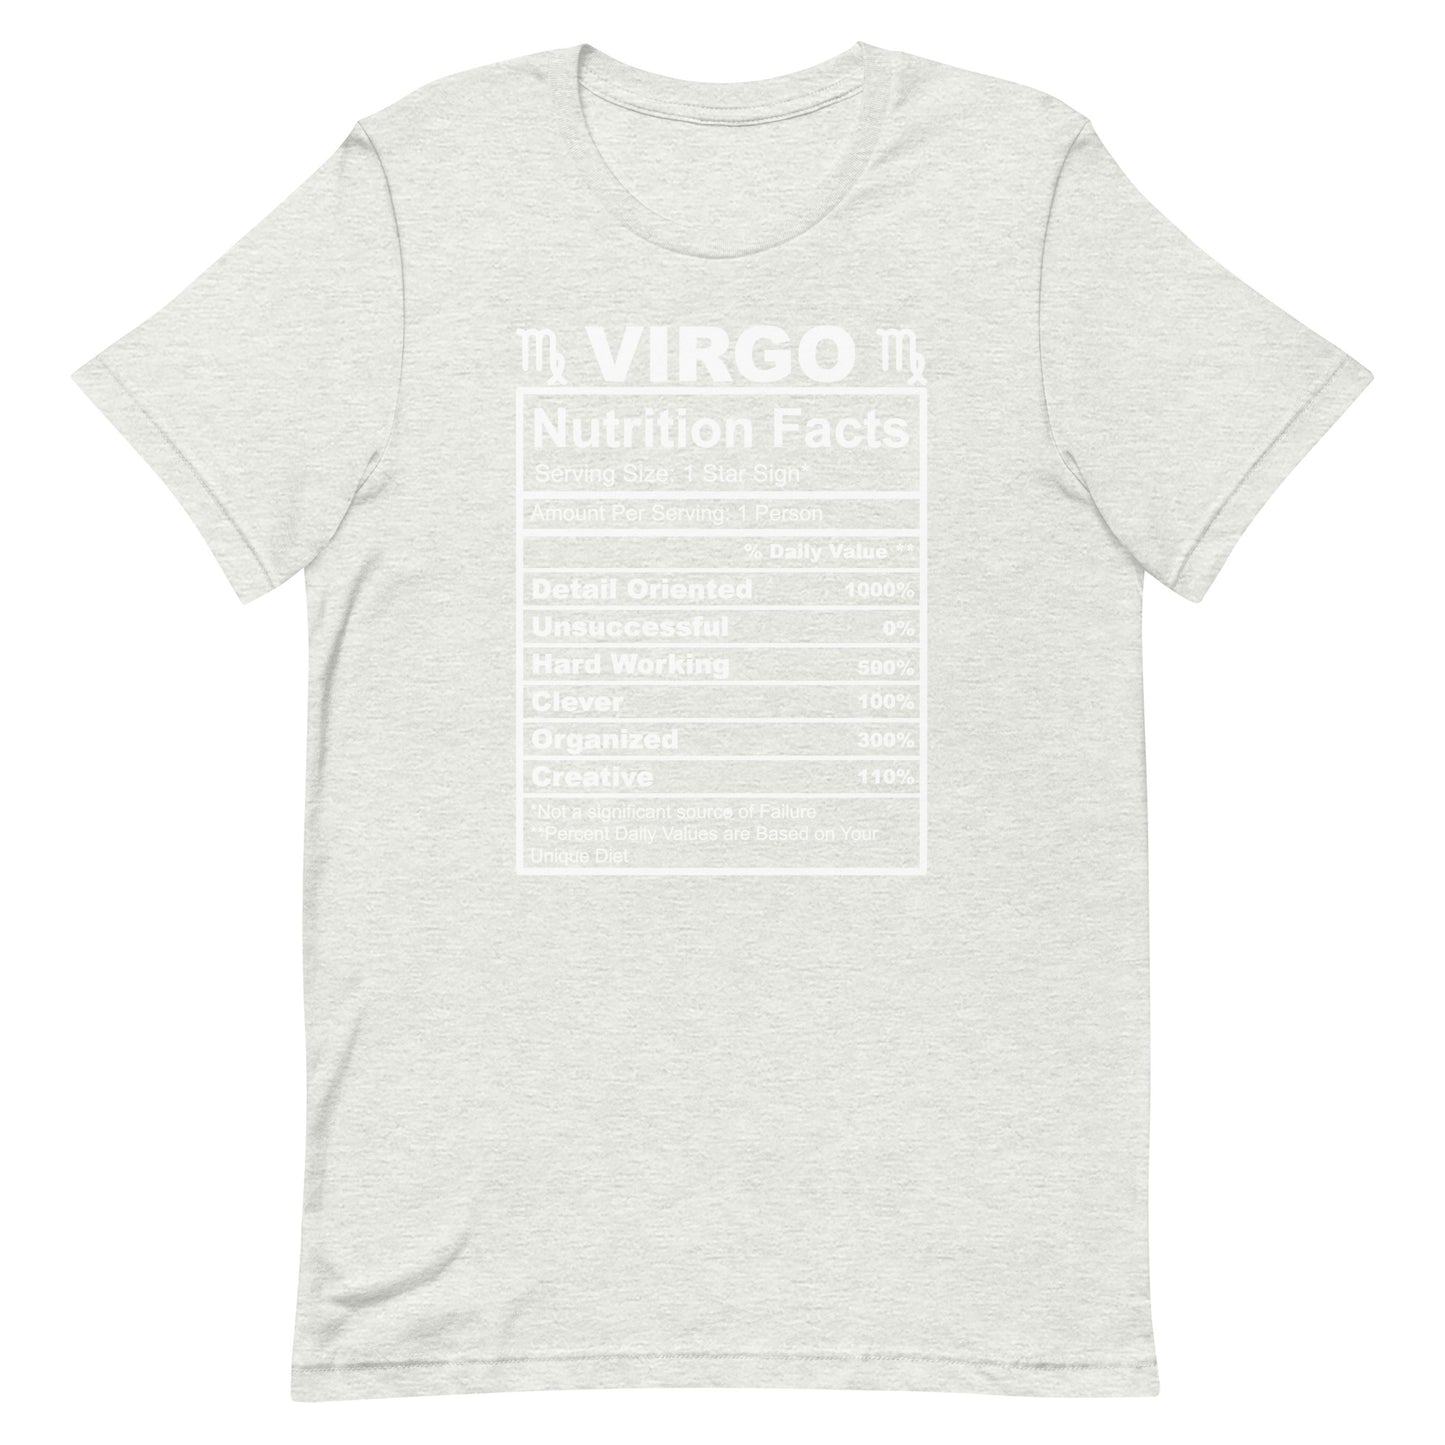 VIRGO - S-M - Unisex T-Shirt (white letters)